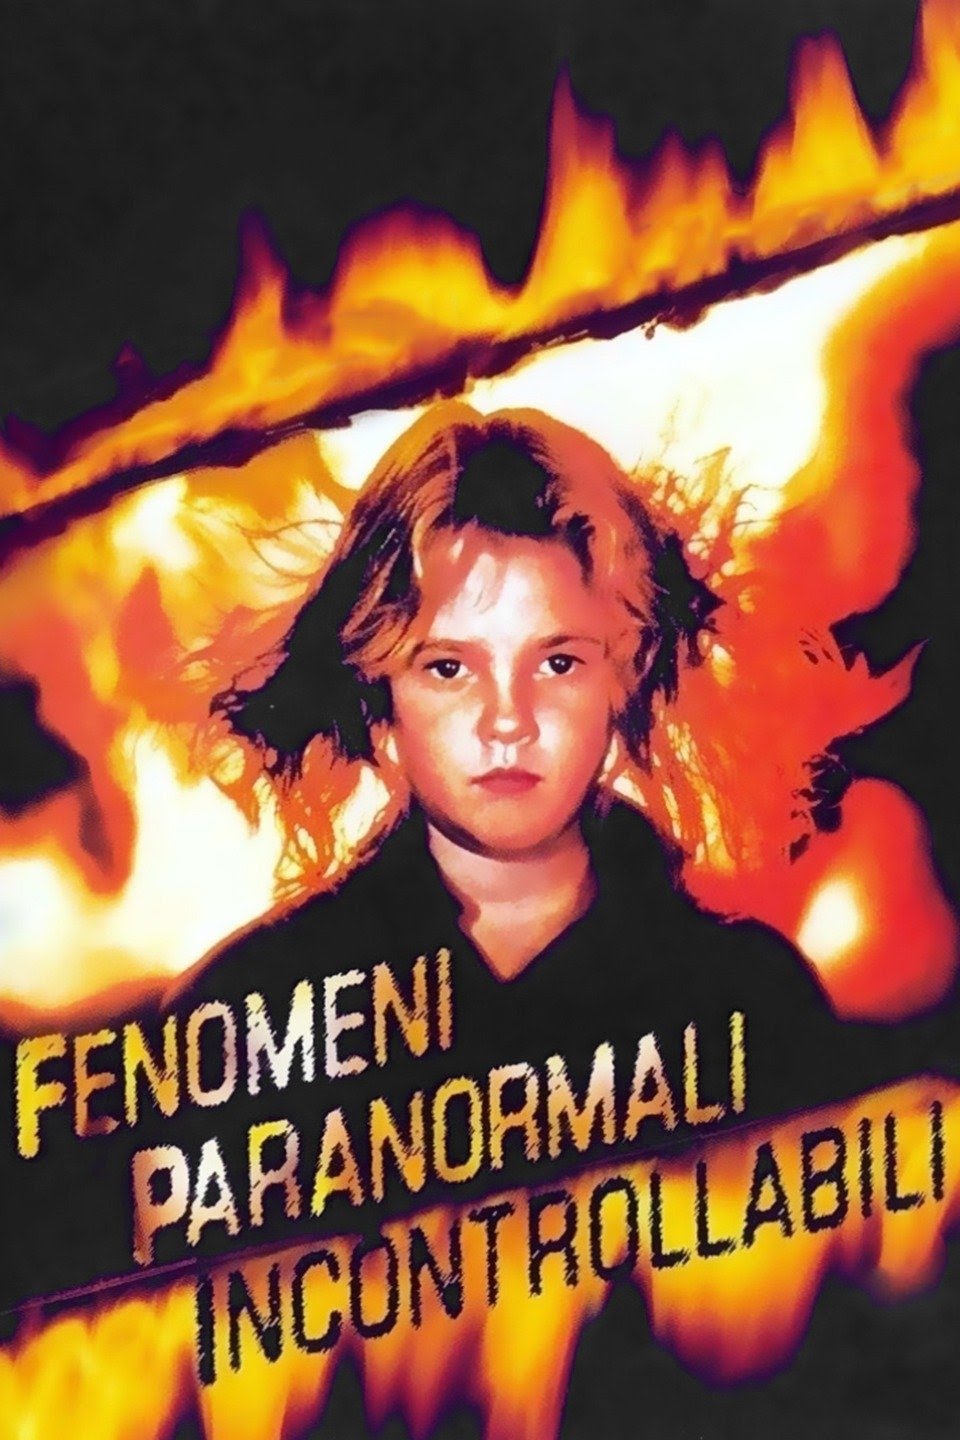 Fenomeni paranormali incontrollabili [HD] (1984)